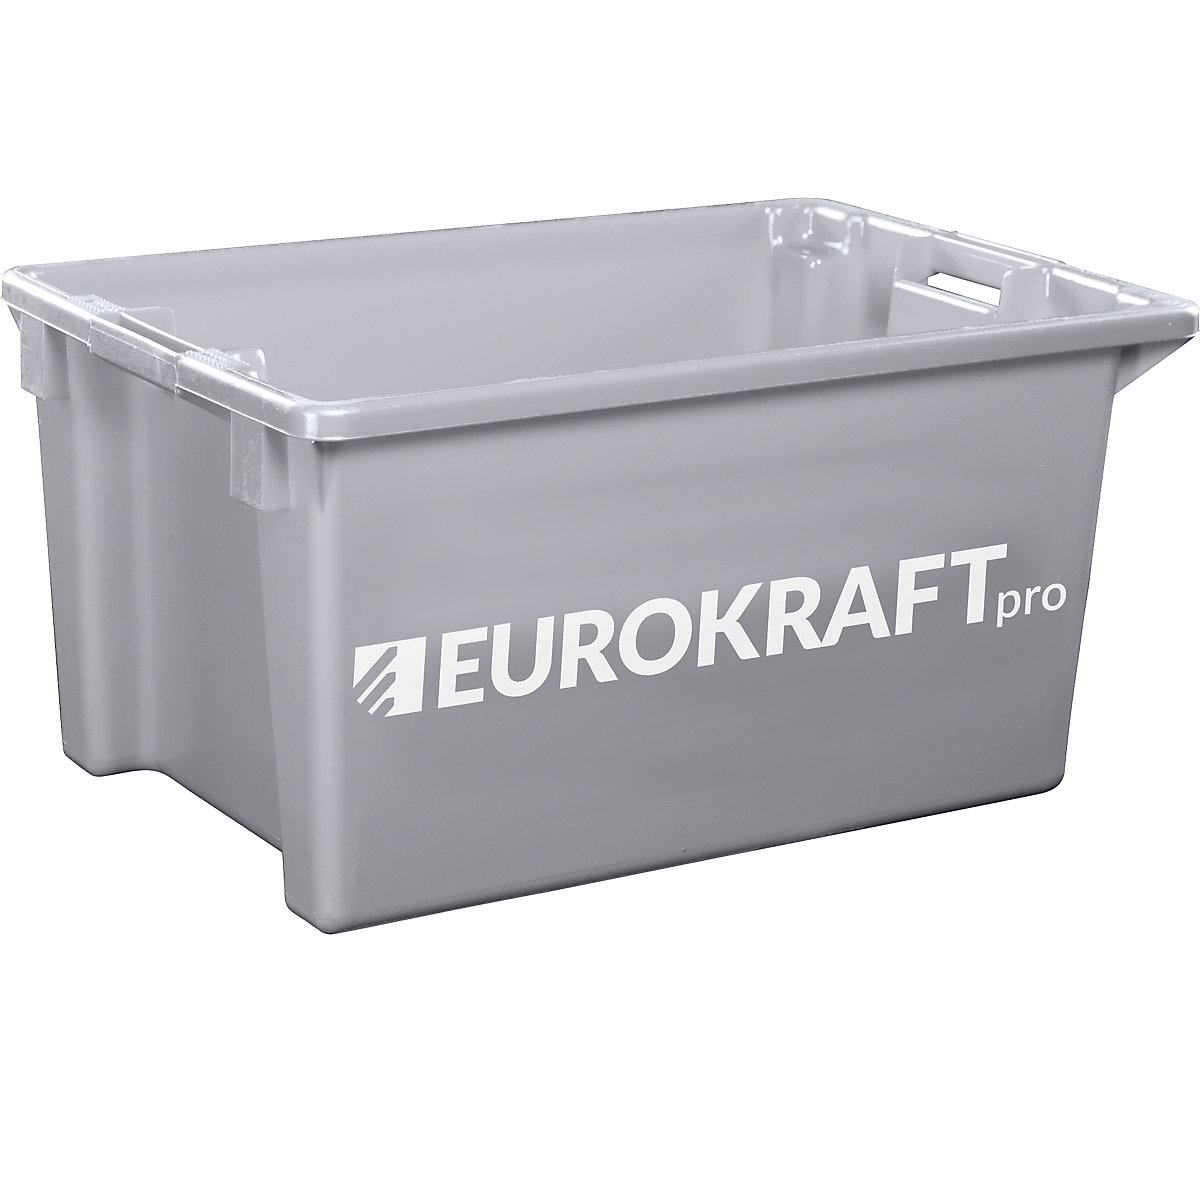 EUROKRAFTpro – Zasučna posoda za zlaganje iz polipropilena, primernega za živila, prostornina 70 l, DE 2 kosa, stene in dno zaprti, siva